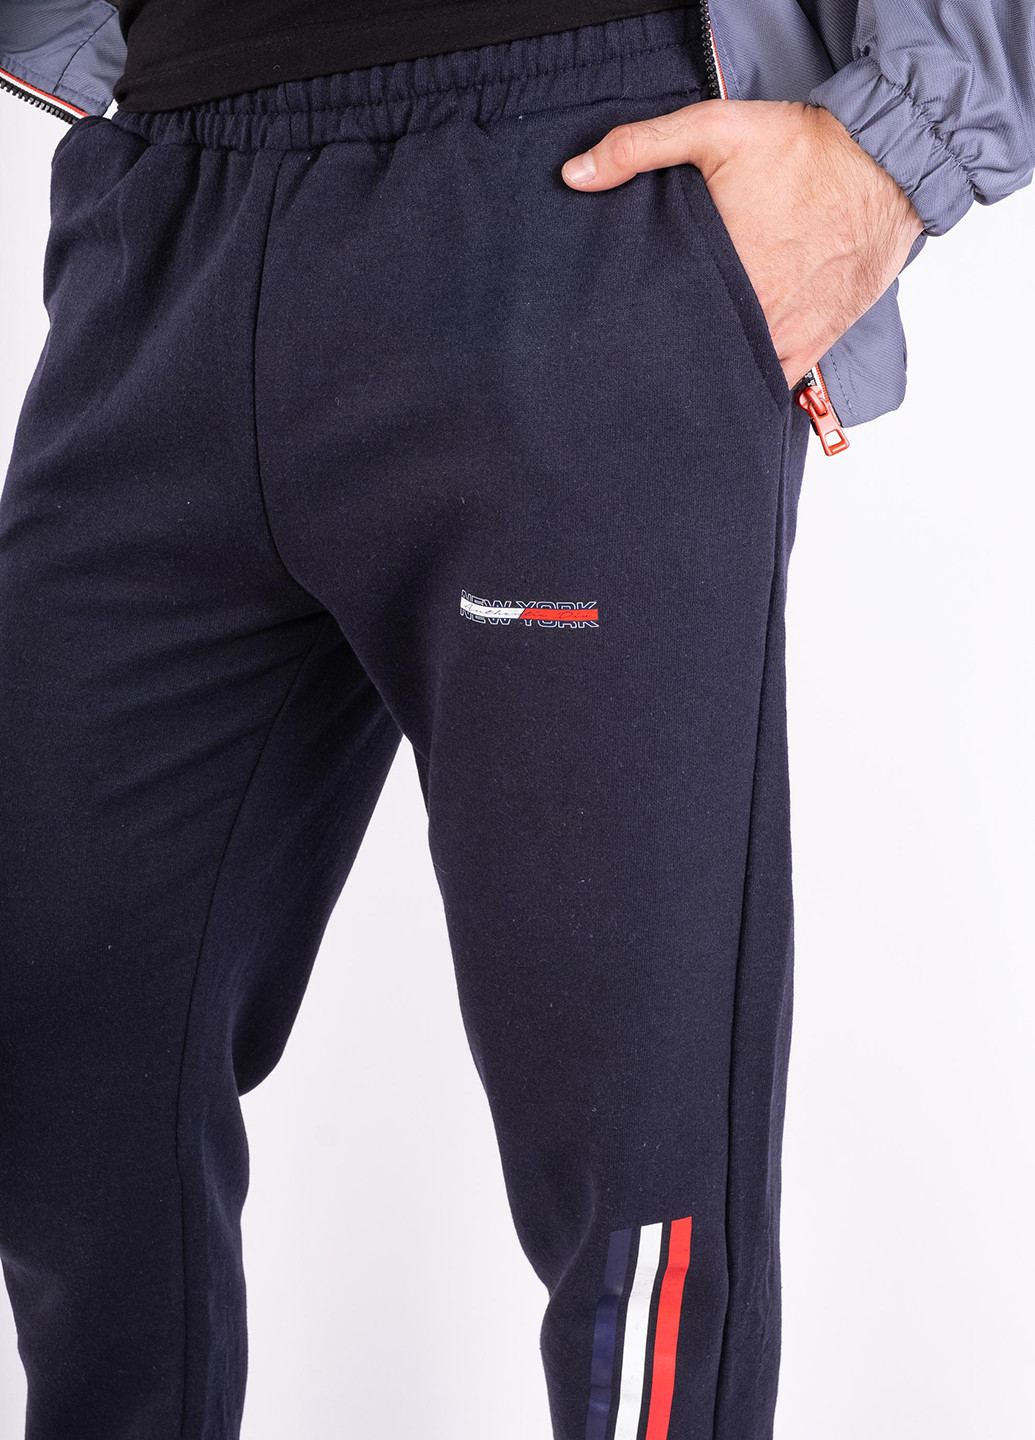 Темно-синие спортивные демисезонные джоггеры брюки Time of Style